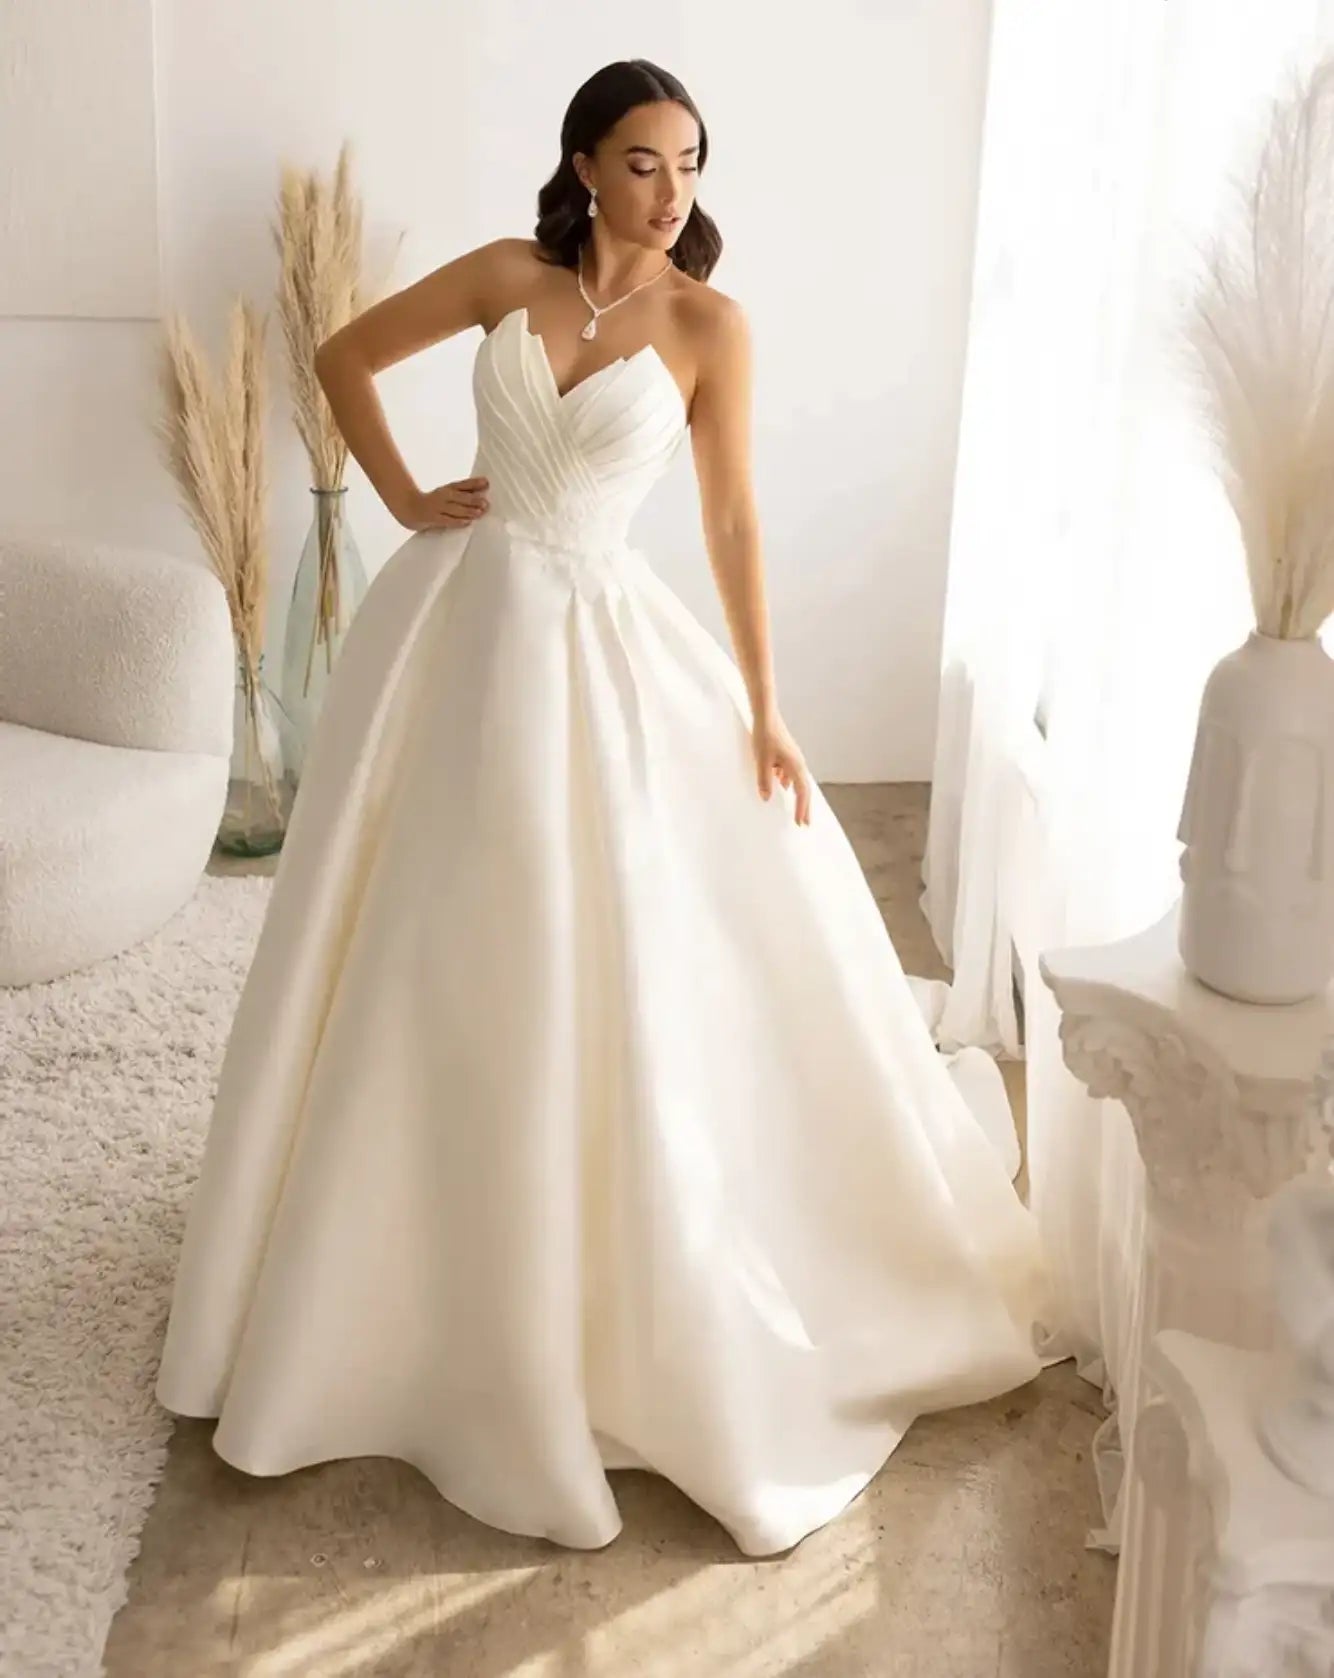 Satin Strapless Natural Waist Ball Gown Wedding Dress